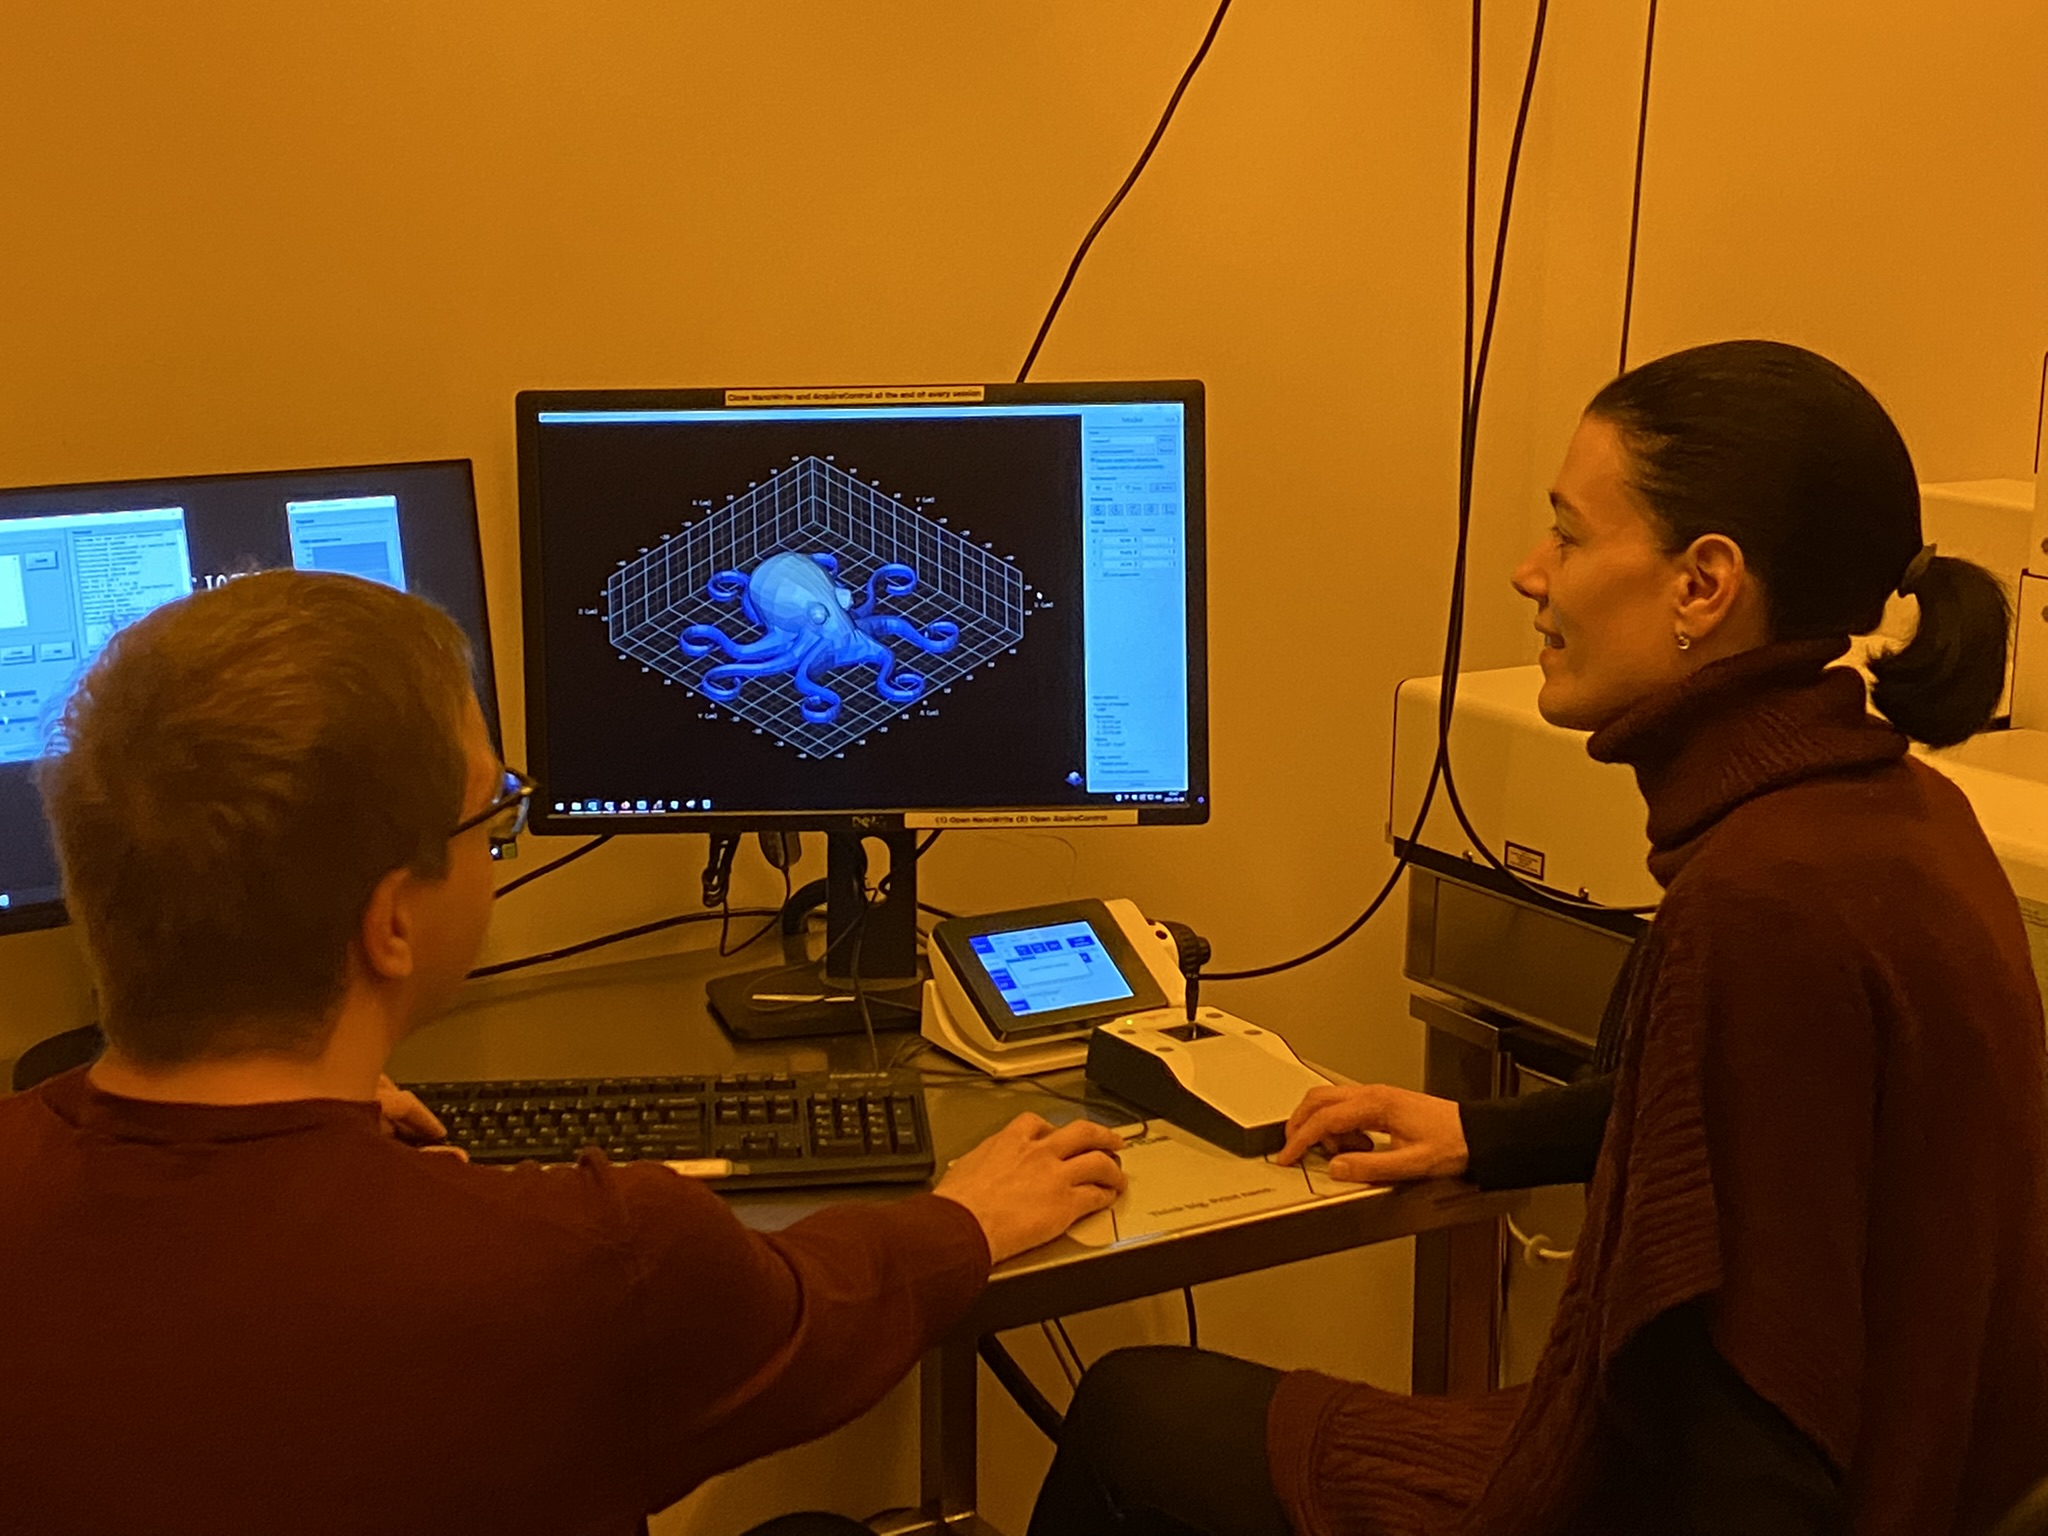 Professorin und Mitarbeiter sitzen vor einem Computerbildschirm, auf dem ein Oktopus in einem Raster dreidimensional modelliert wurde.